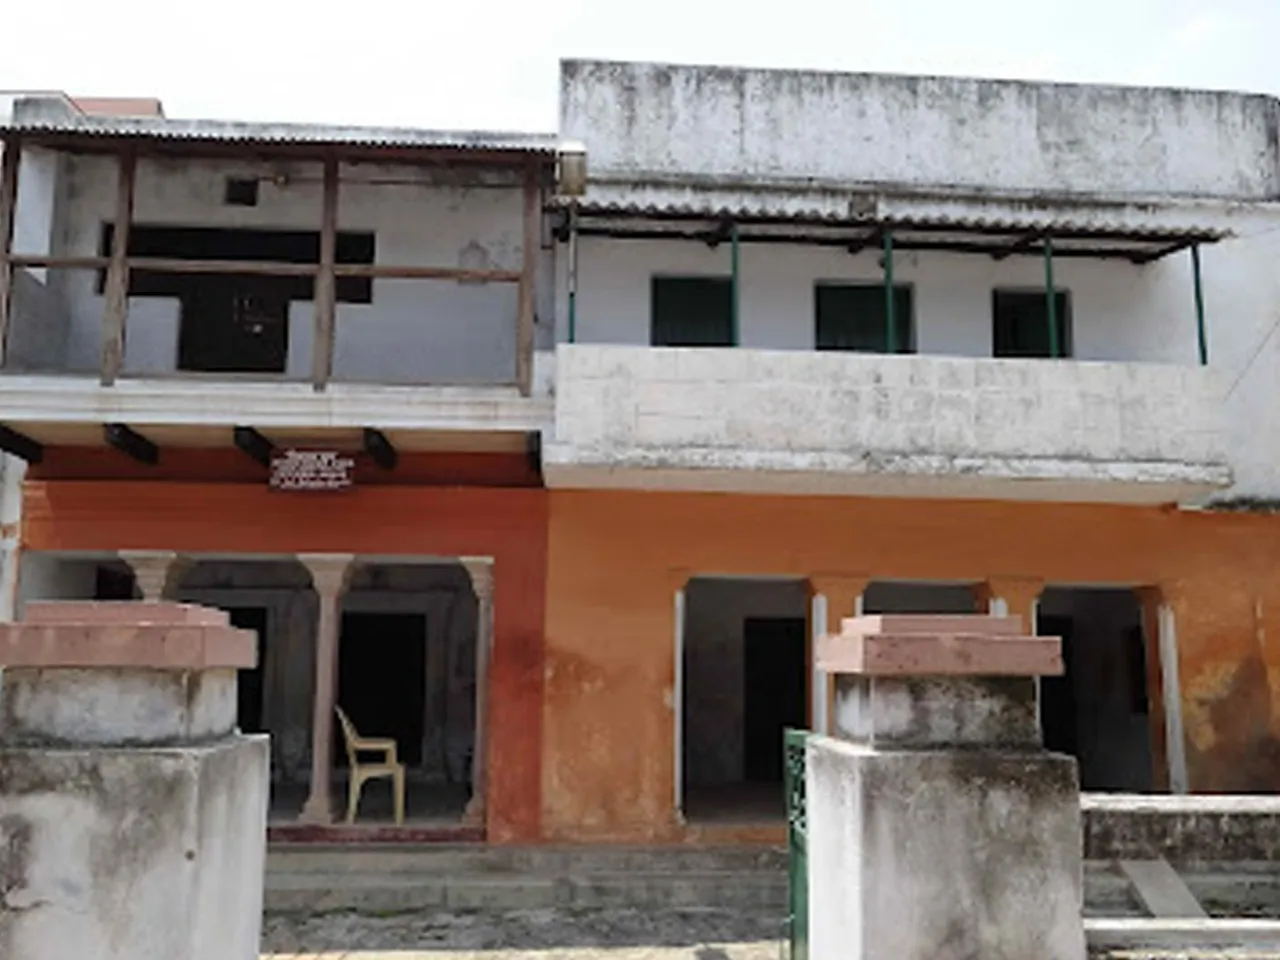 lal bahadur shastri's paternal house